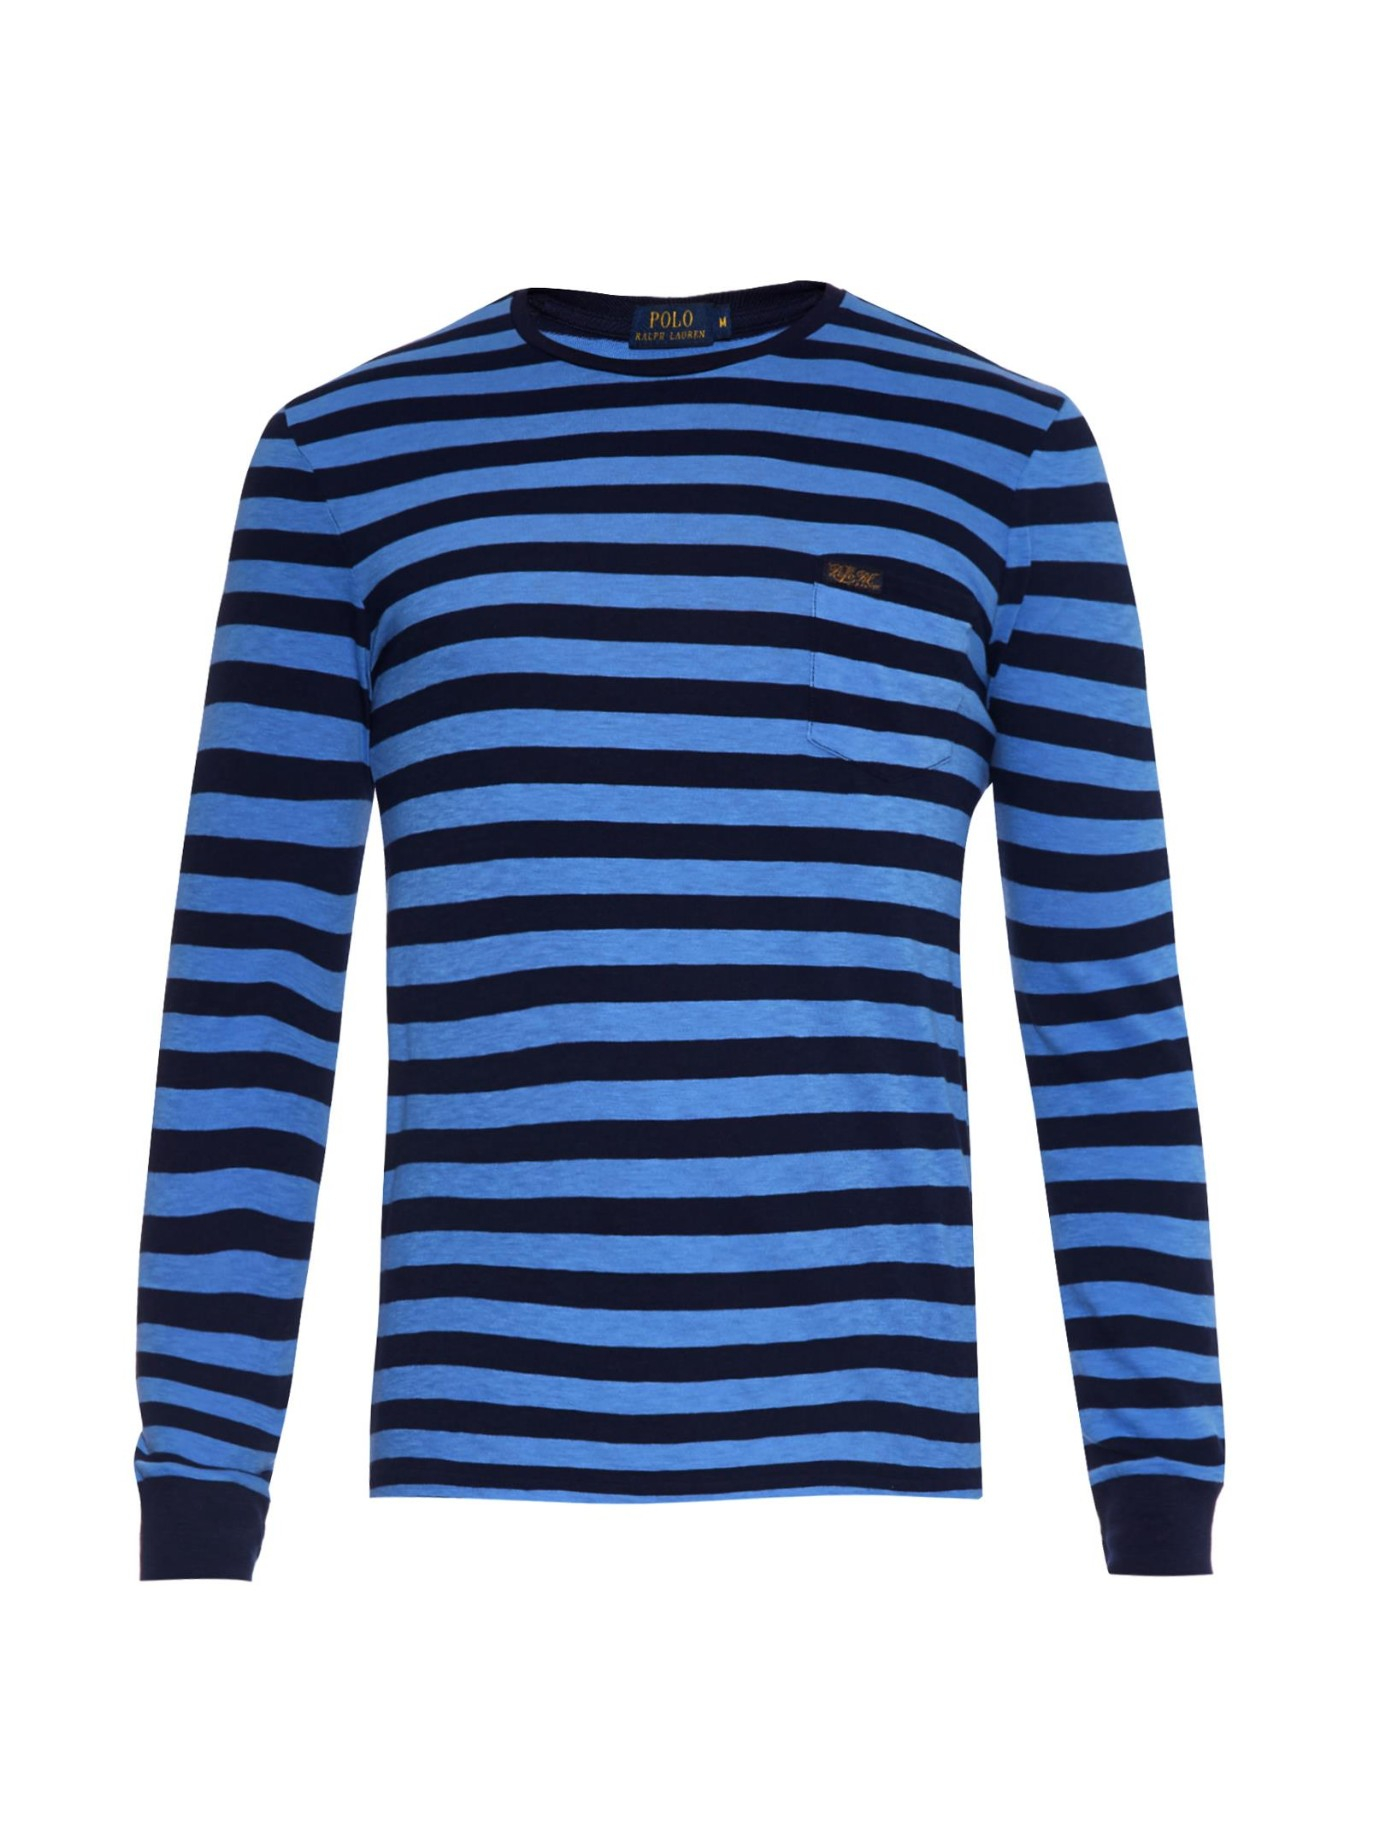 Lyst - Polo Ralph Lauren Long-Sleeved Striped Jersey T-Shirt for Men